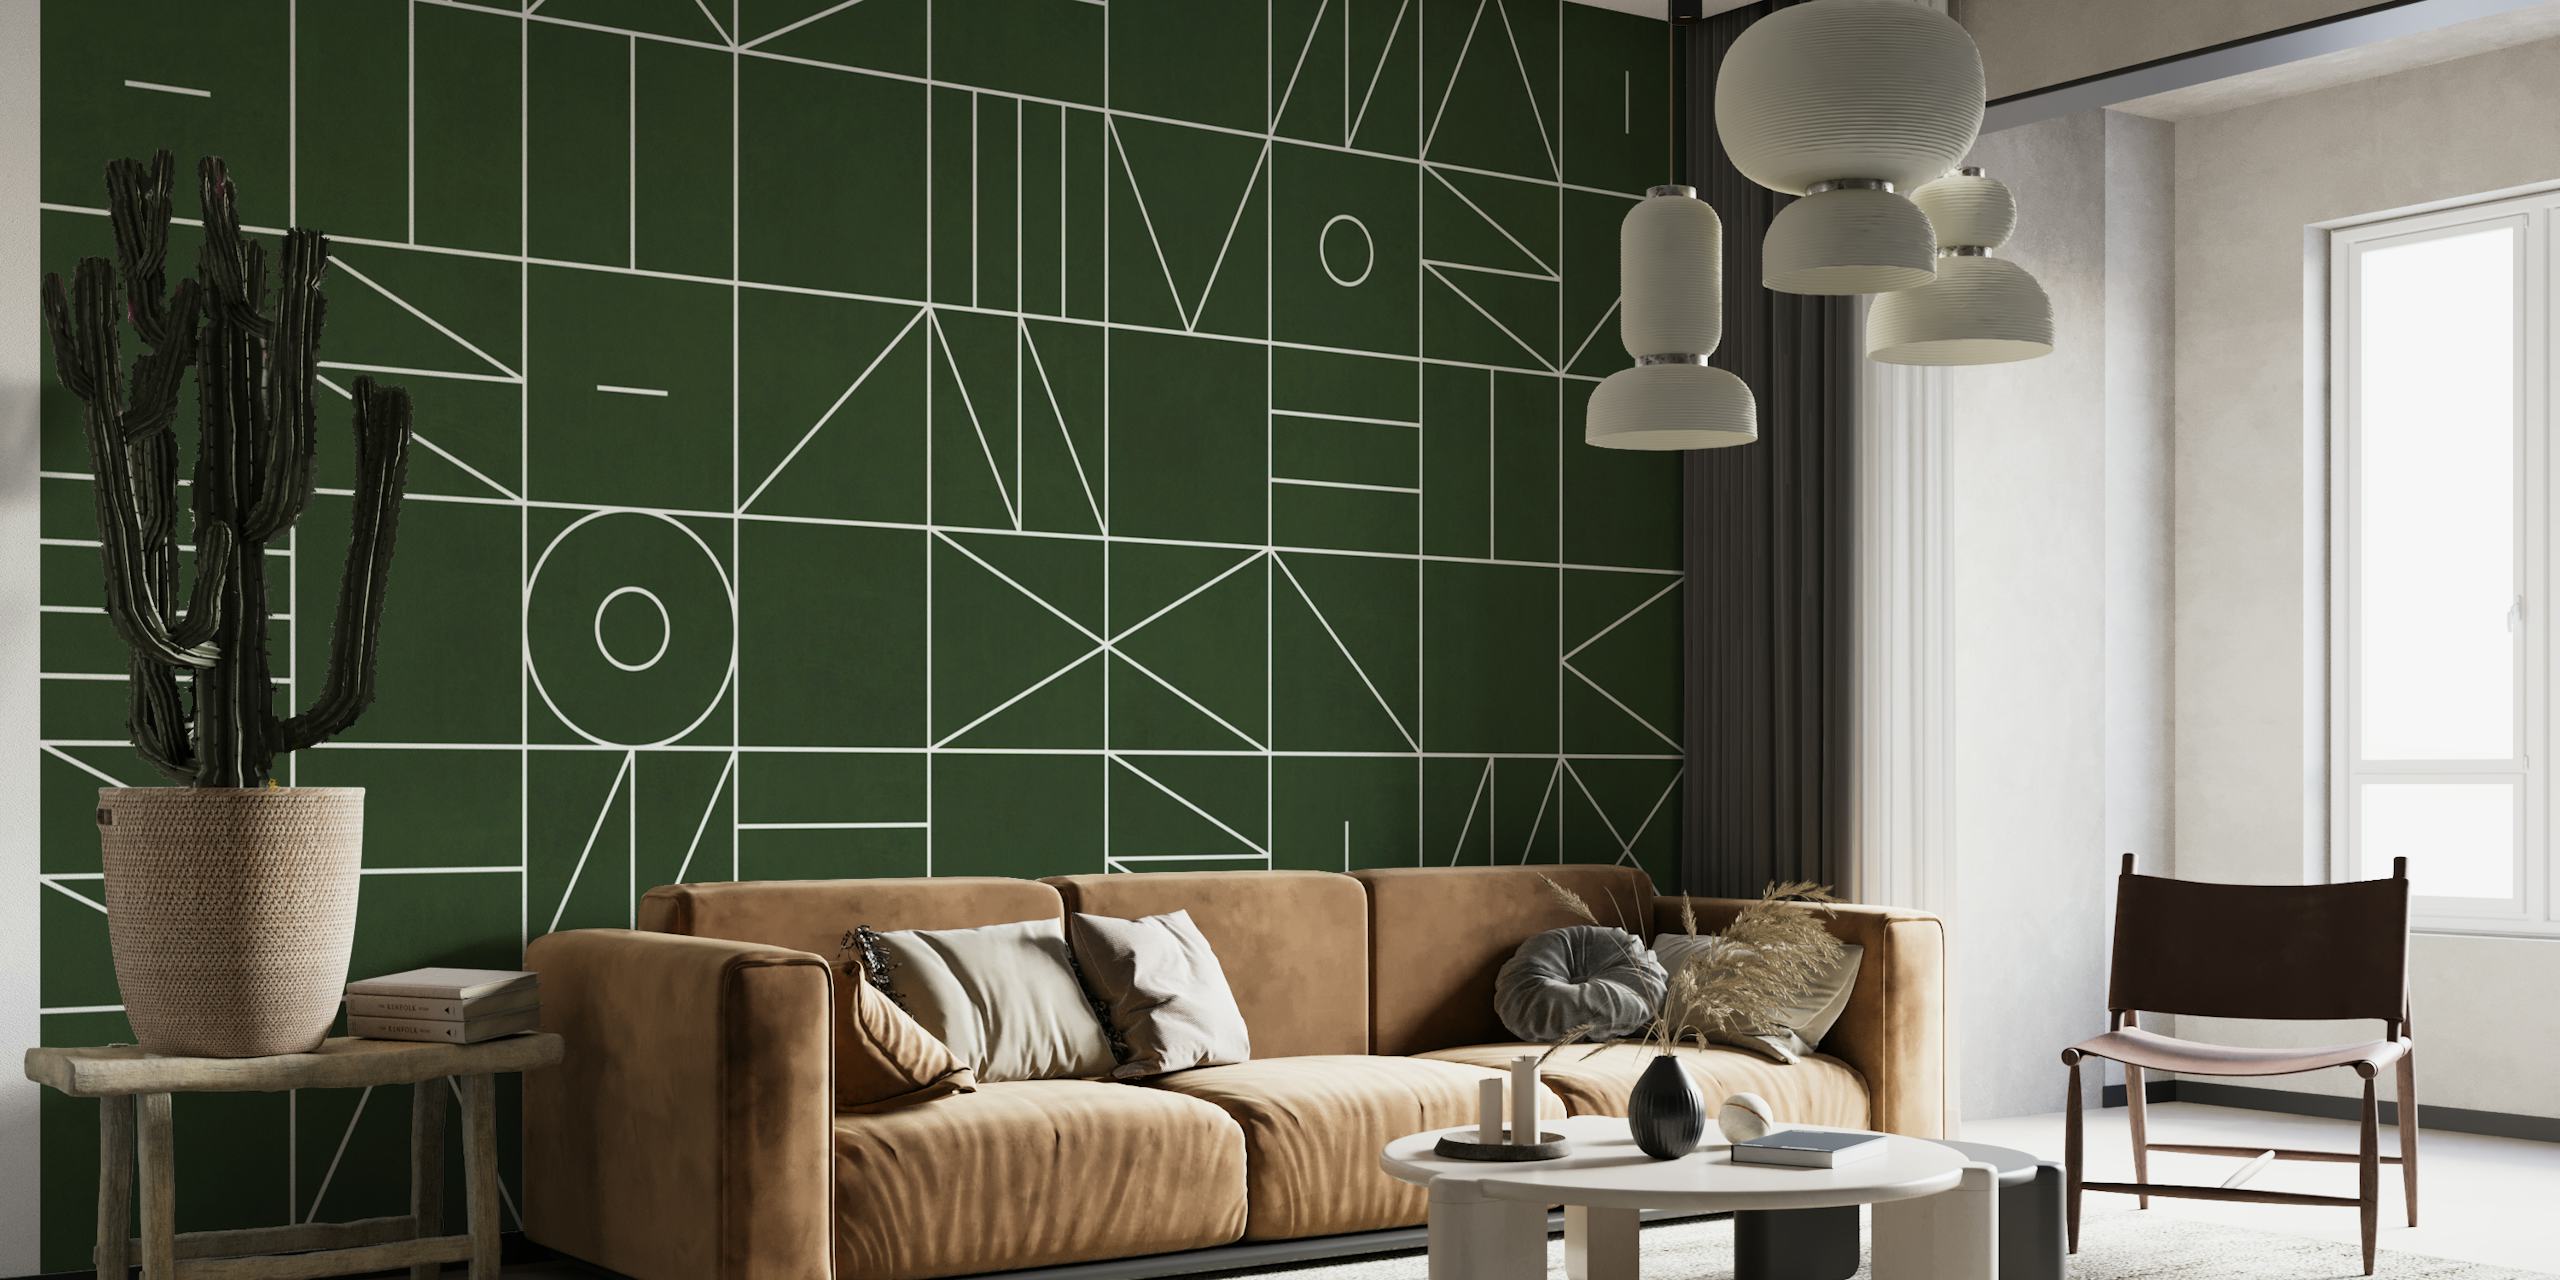 Muurschildering met geometrisch patroon met een verscheidenheid aan vormen en lijnen op een donkere achtergrond